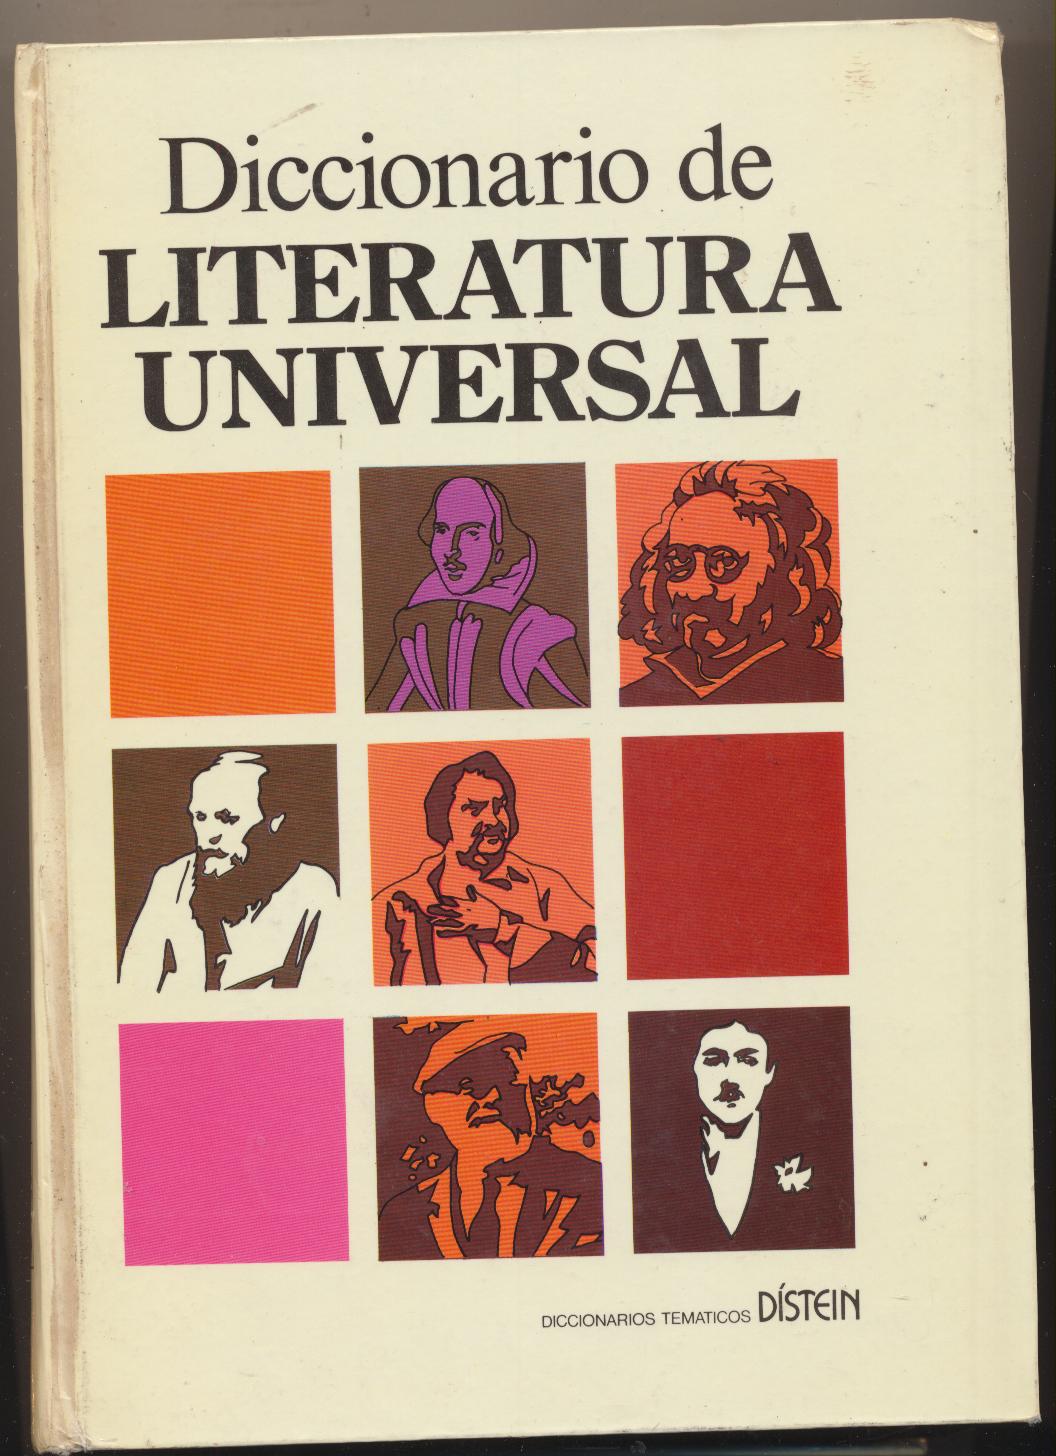 Diccionario de Literatura Universal. Distein 1977